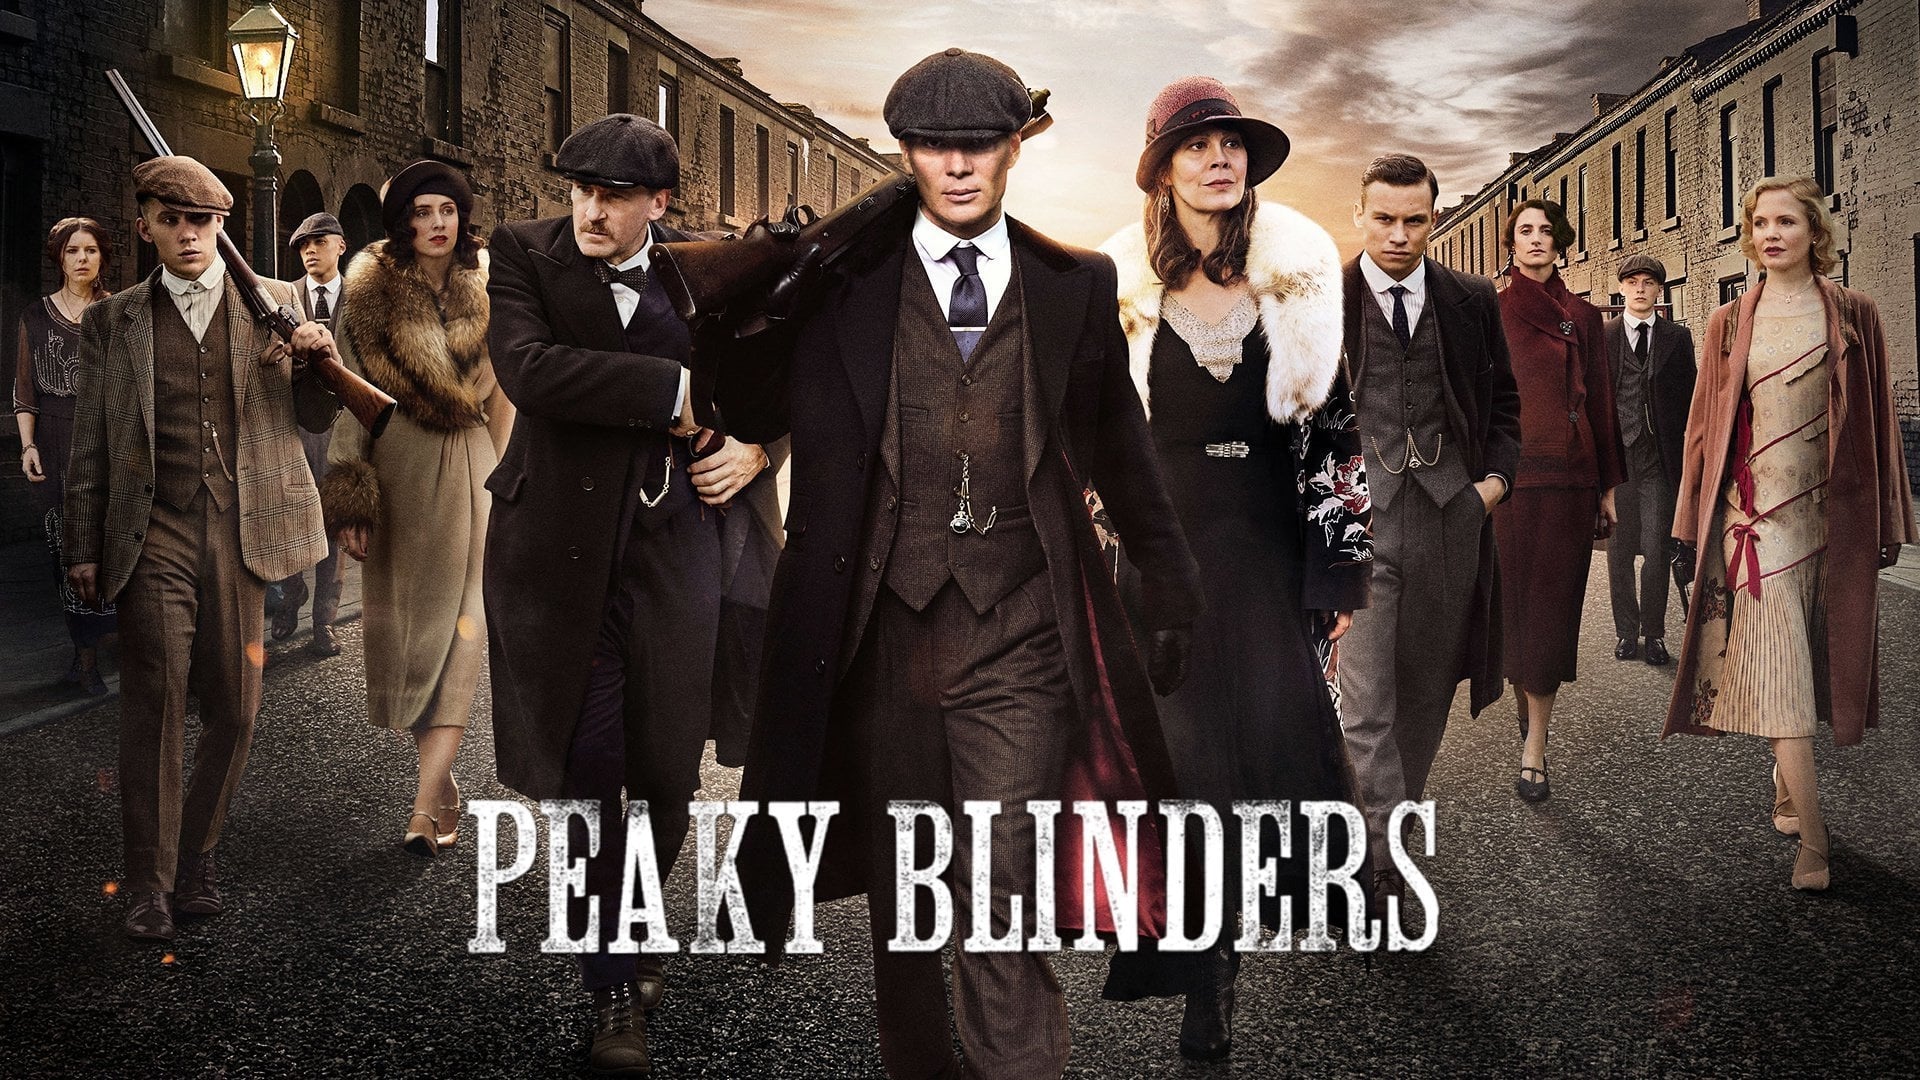 Peaky Blinders - Season 6 Episode 1